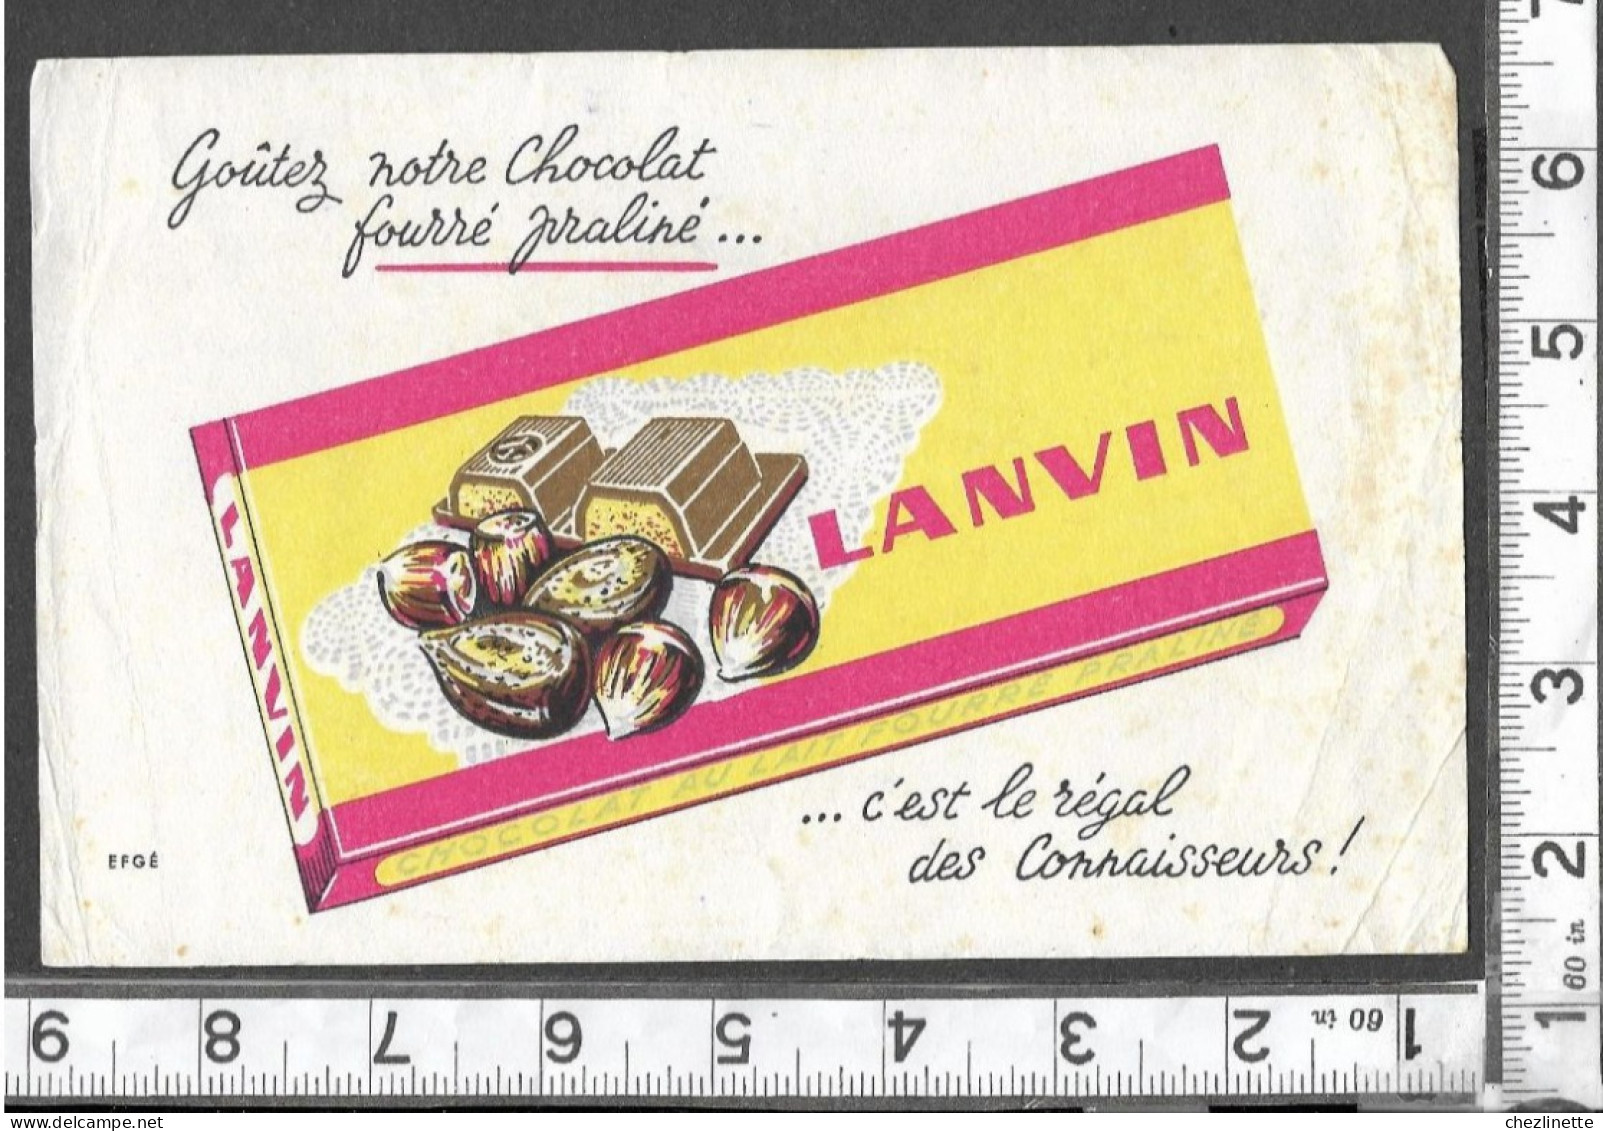 BUVARD ANCIEN PUBLICITAIRE / CHOCOLAT LANVIN / FOURRE PRALINE NOISETTES AMANDES / EFGE  / RV - Chocolat